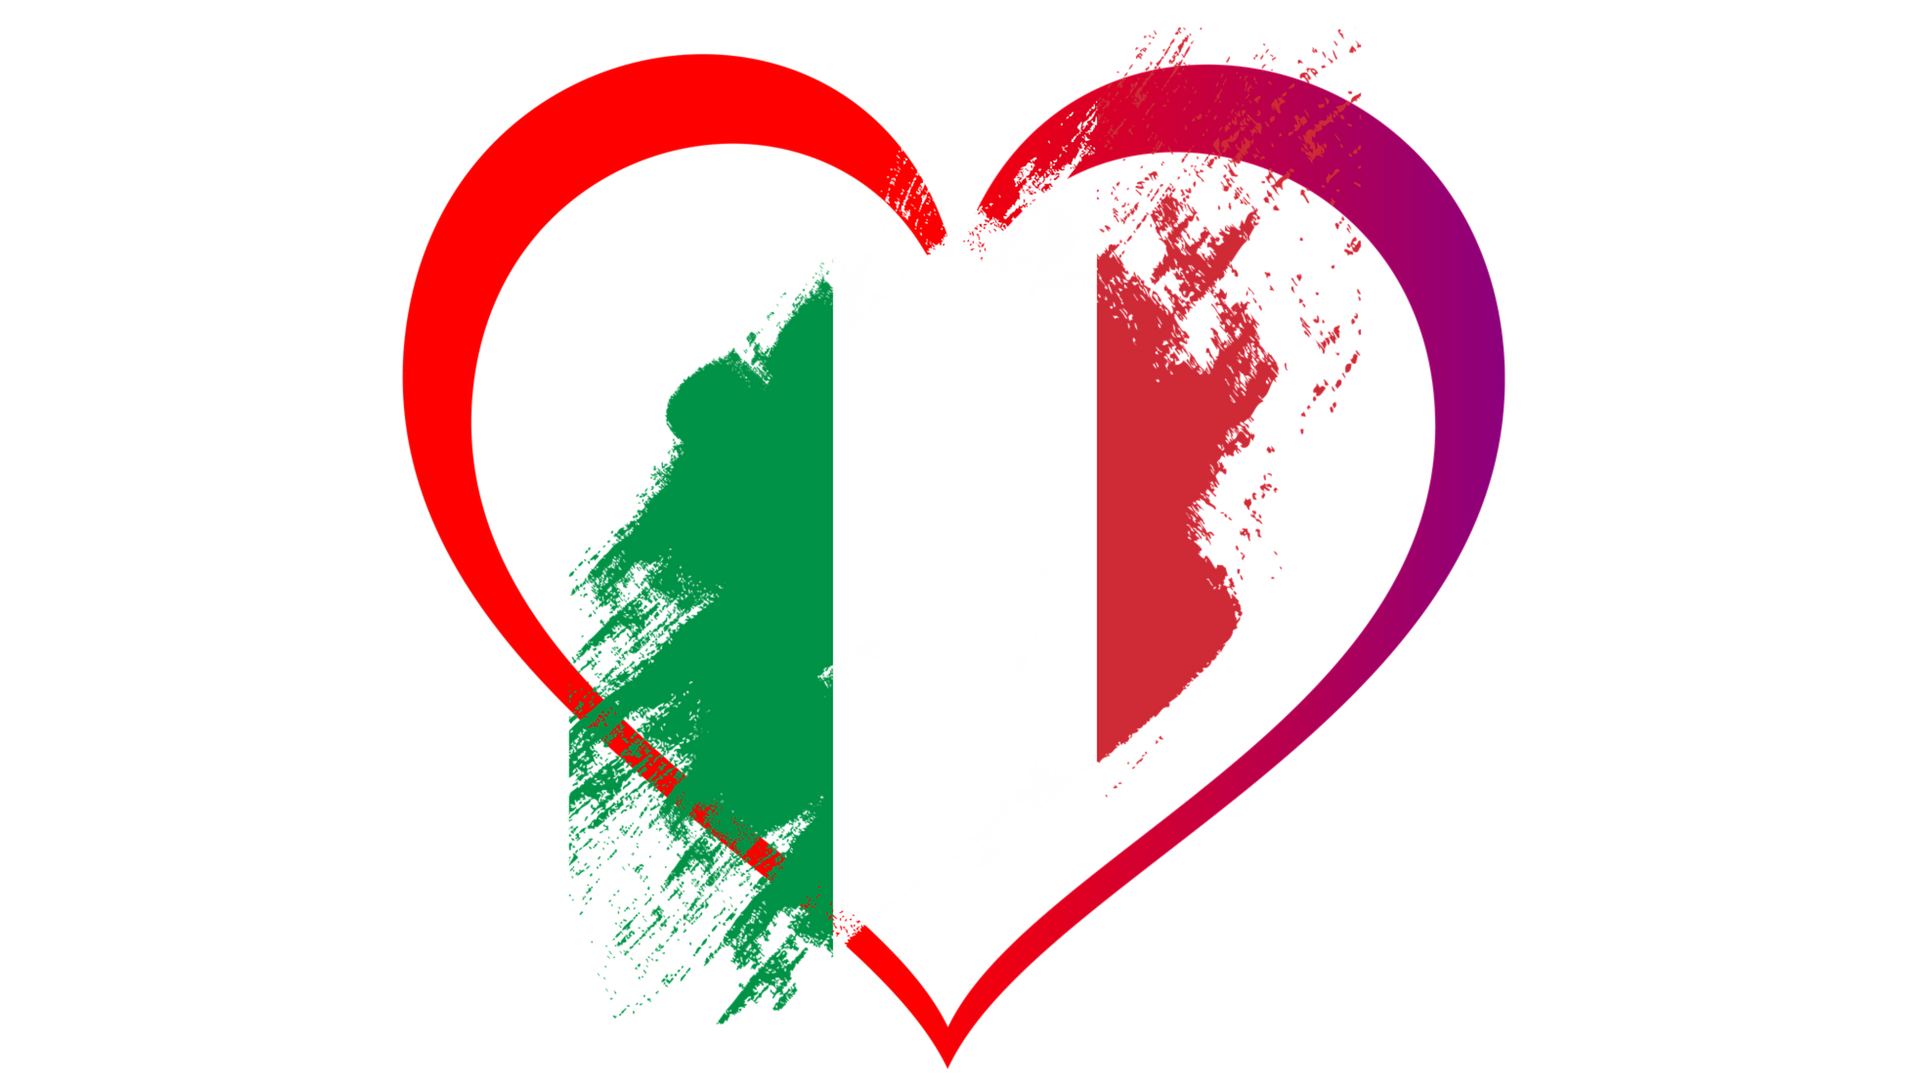 Farben der italienischen Fahne: grün, weiß, rot mit Herz.